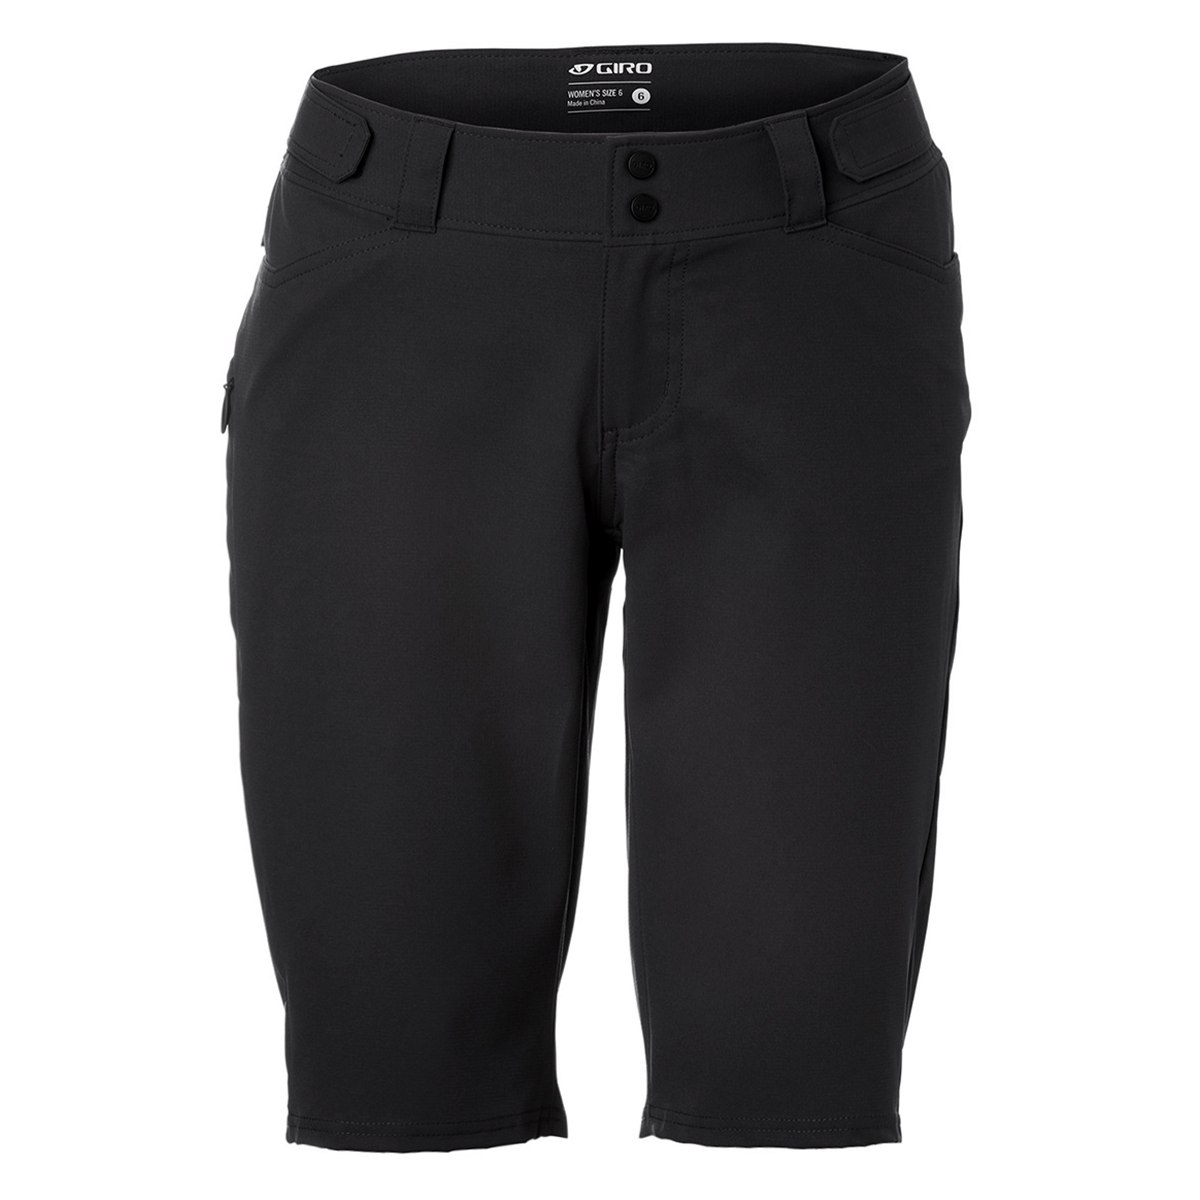 Produktbild von Giro Arc MTB Shorts Damen - schwarz